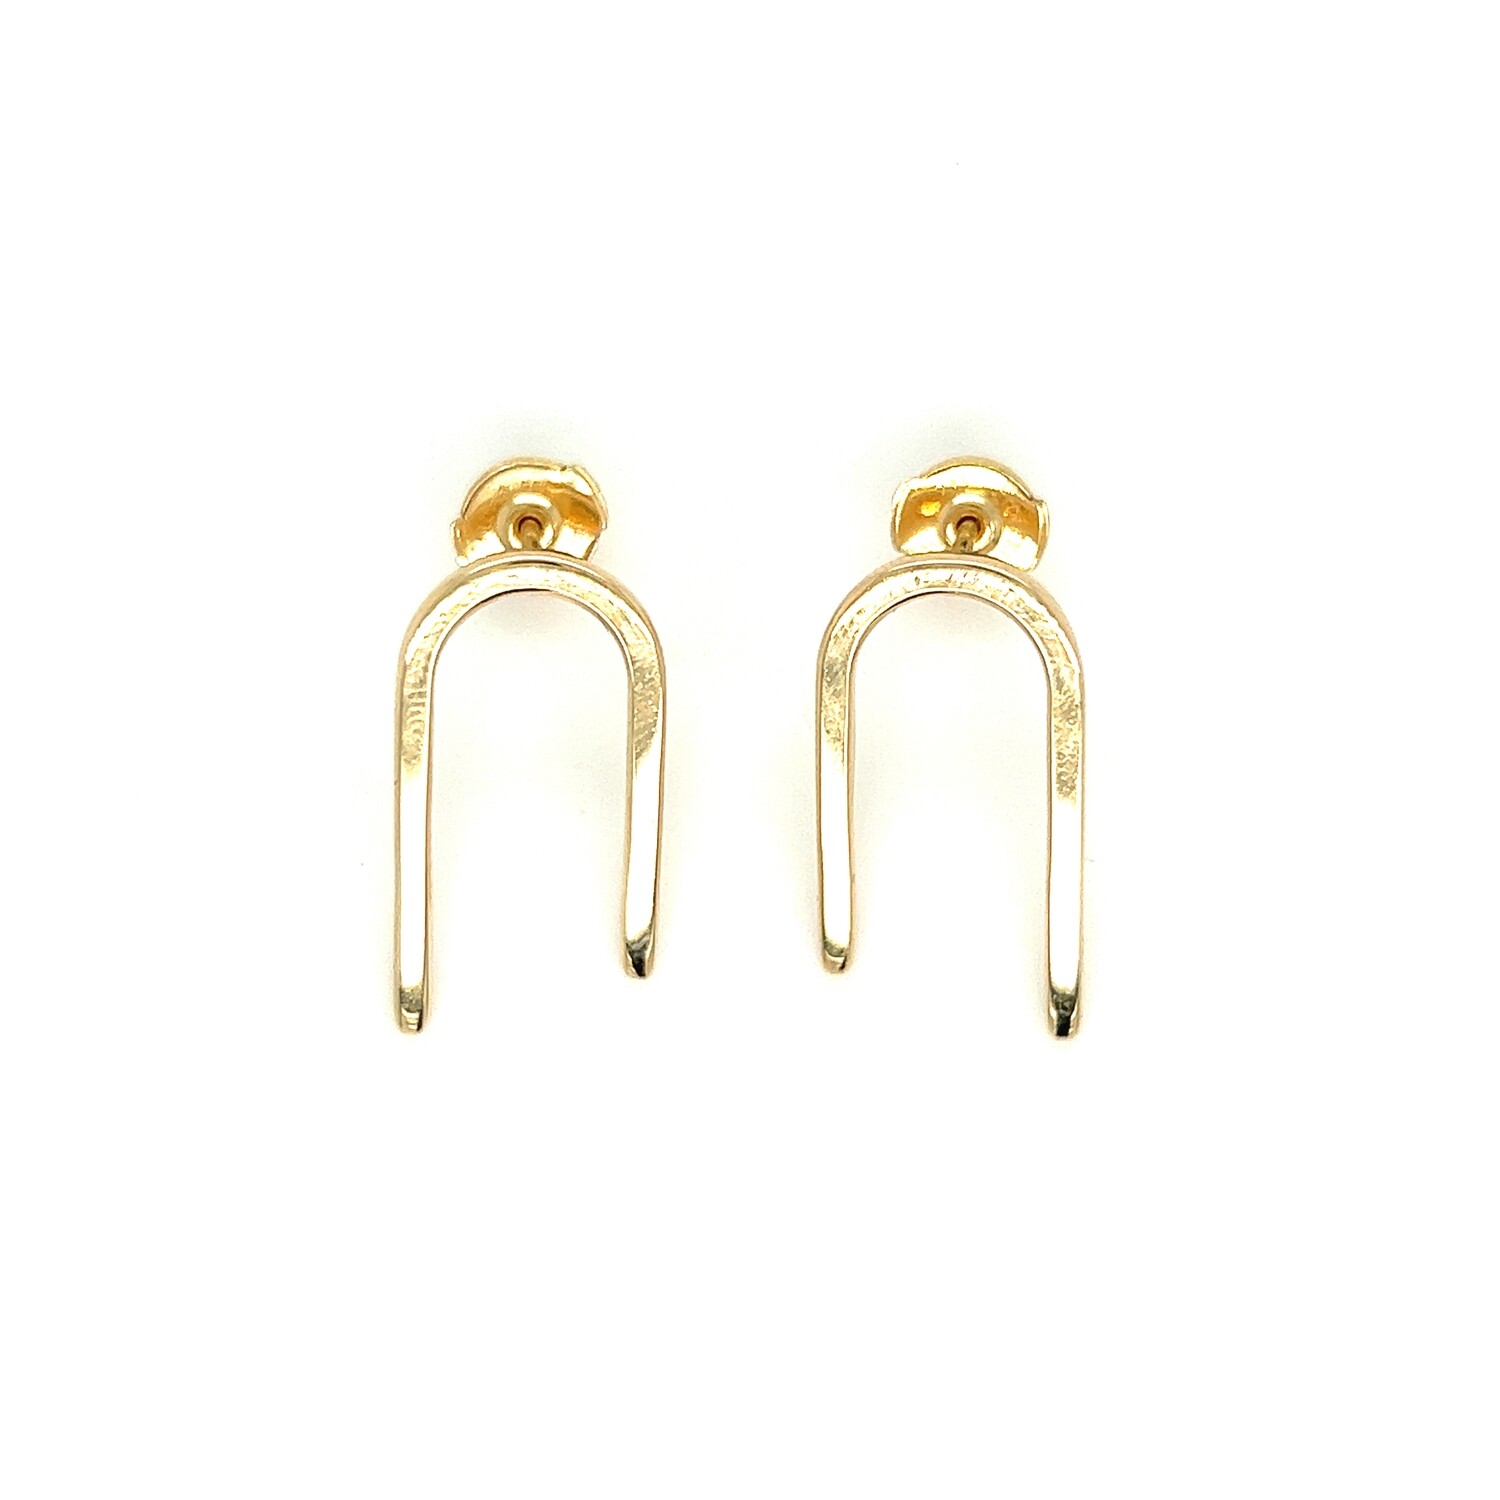 Curved Split Bar Earrings in 14k Yellow Gold